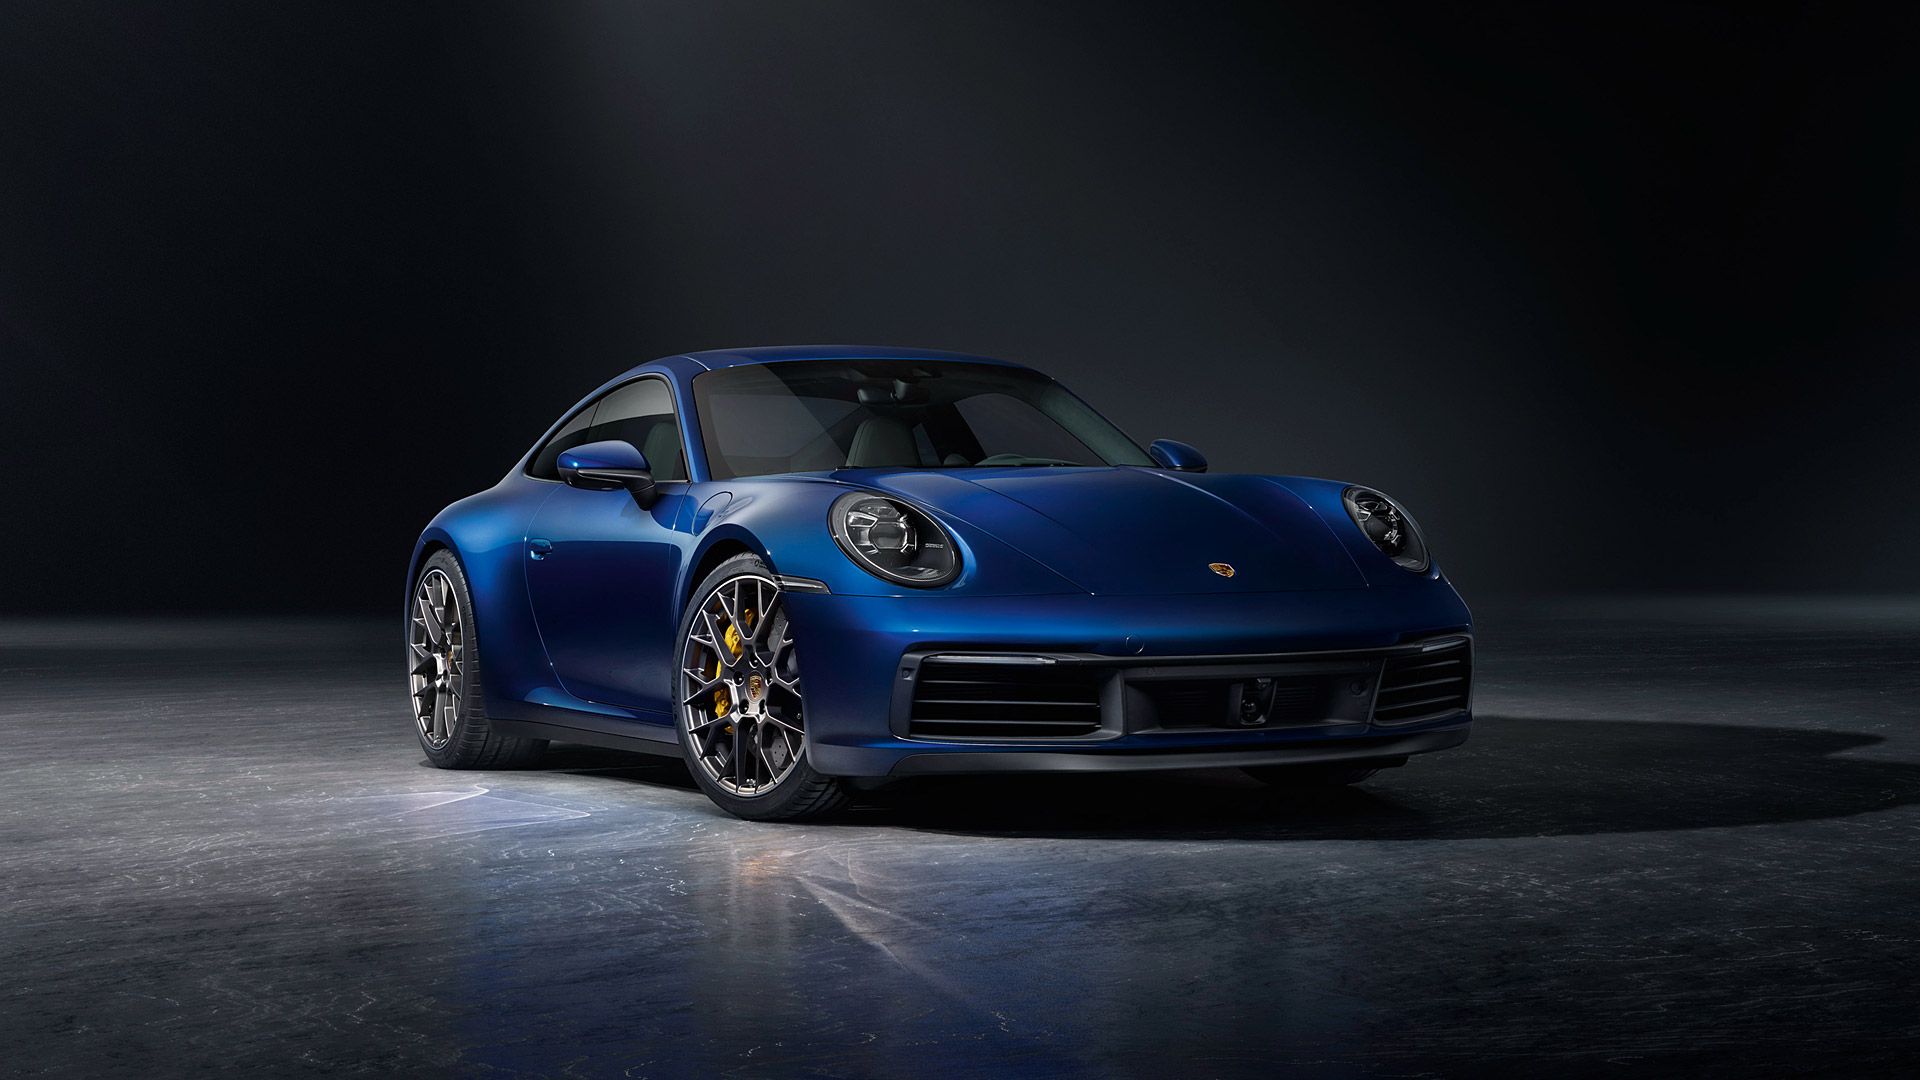 Porsche 911 Desktop Wallpapers 4k Hd Porsche 911 Desktop Backgrounds On Wallpaperbat